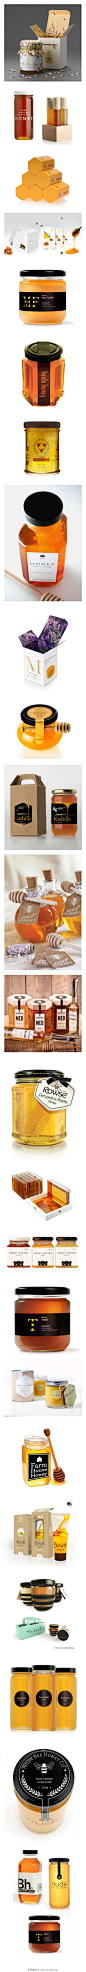 #轻创意# 蜂蜜产品包装设计。